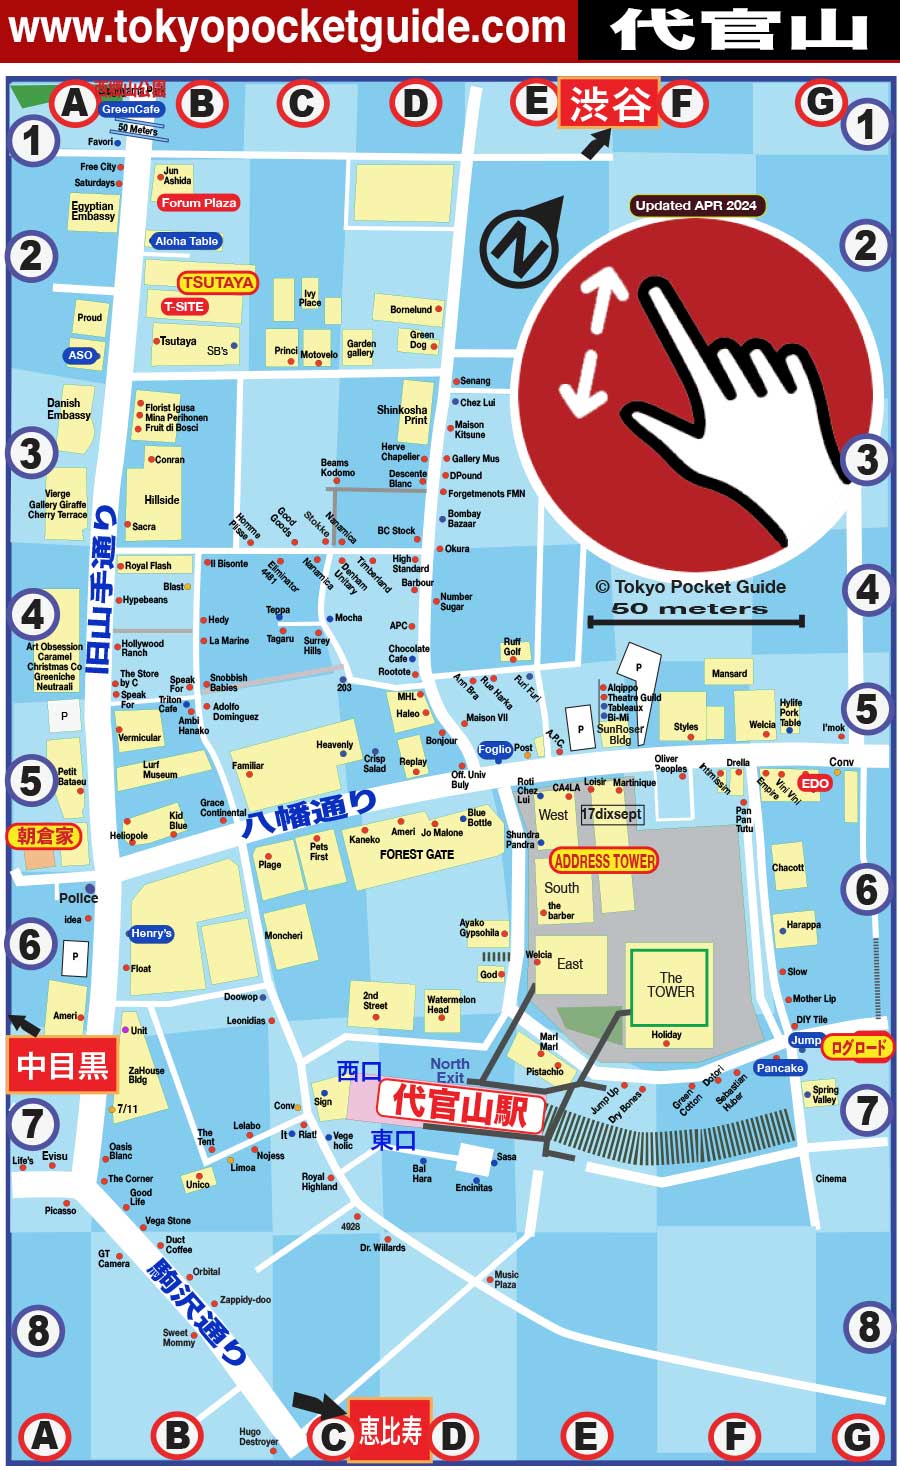 東京 代官山 わかりやすい ショッピング マップ 代官山 地図 Tokyo Pocket Guide